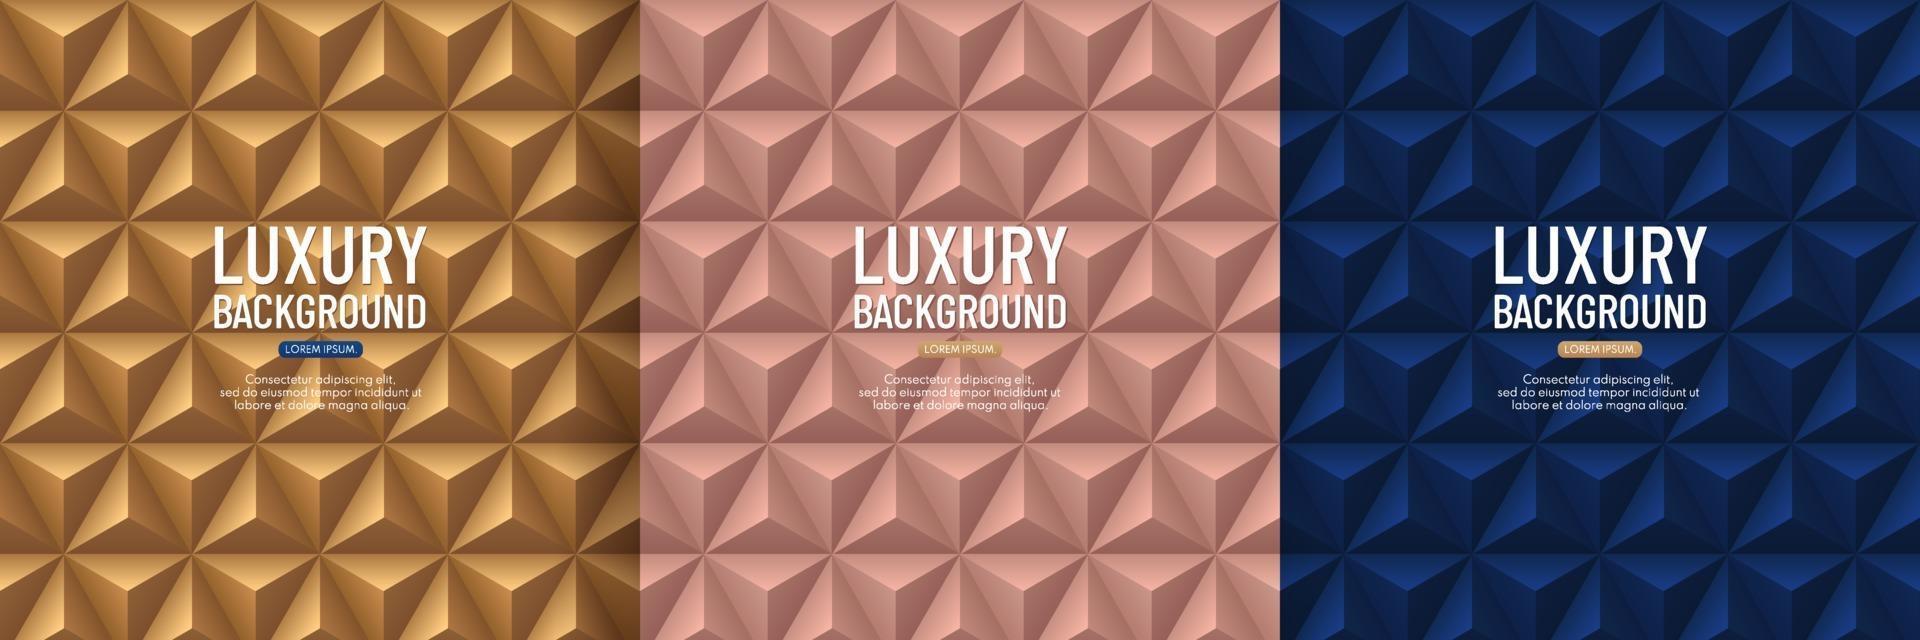 Satz Luxus dunkelblau, Roségold und goldene Pyramide 3d Musterhintergrund. abstraktes geometrisches Texturdesign. Vektorillustration vektor